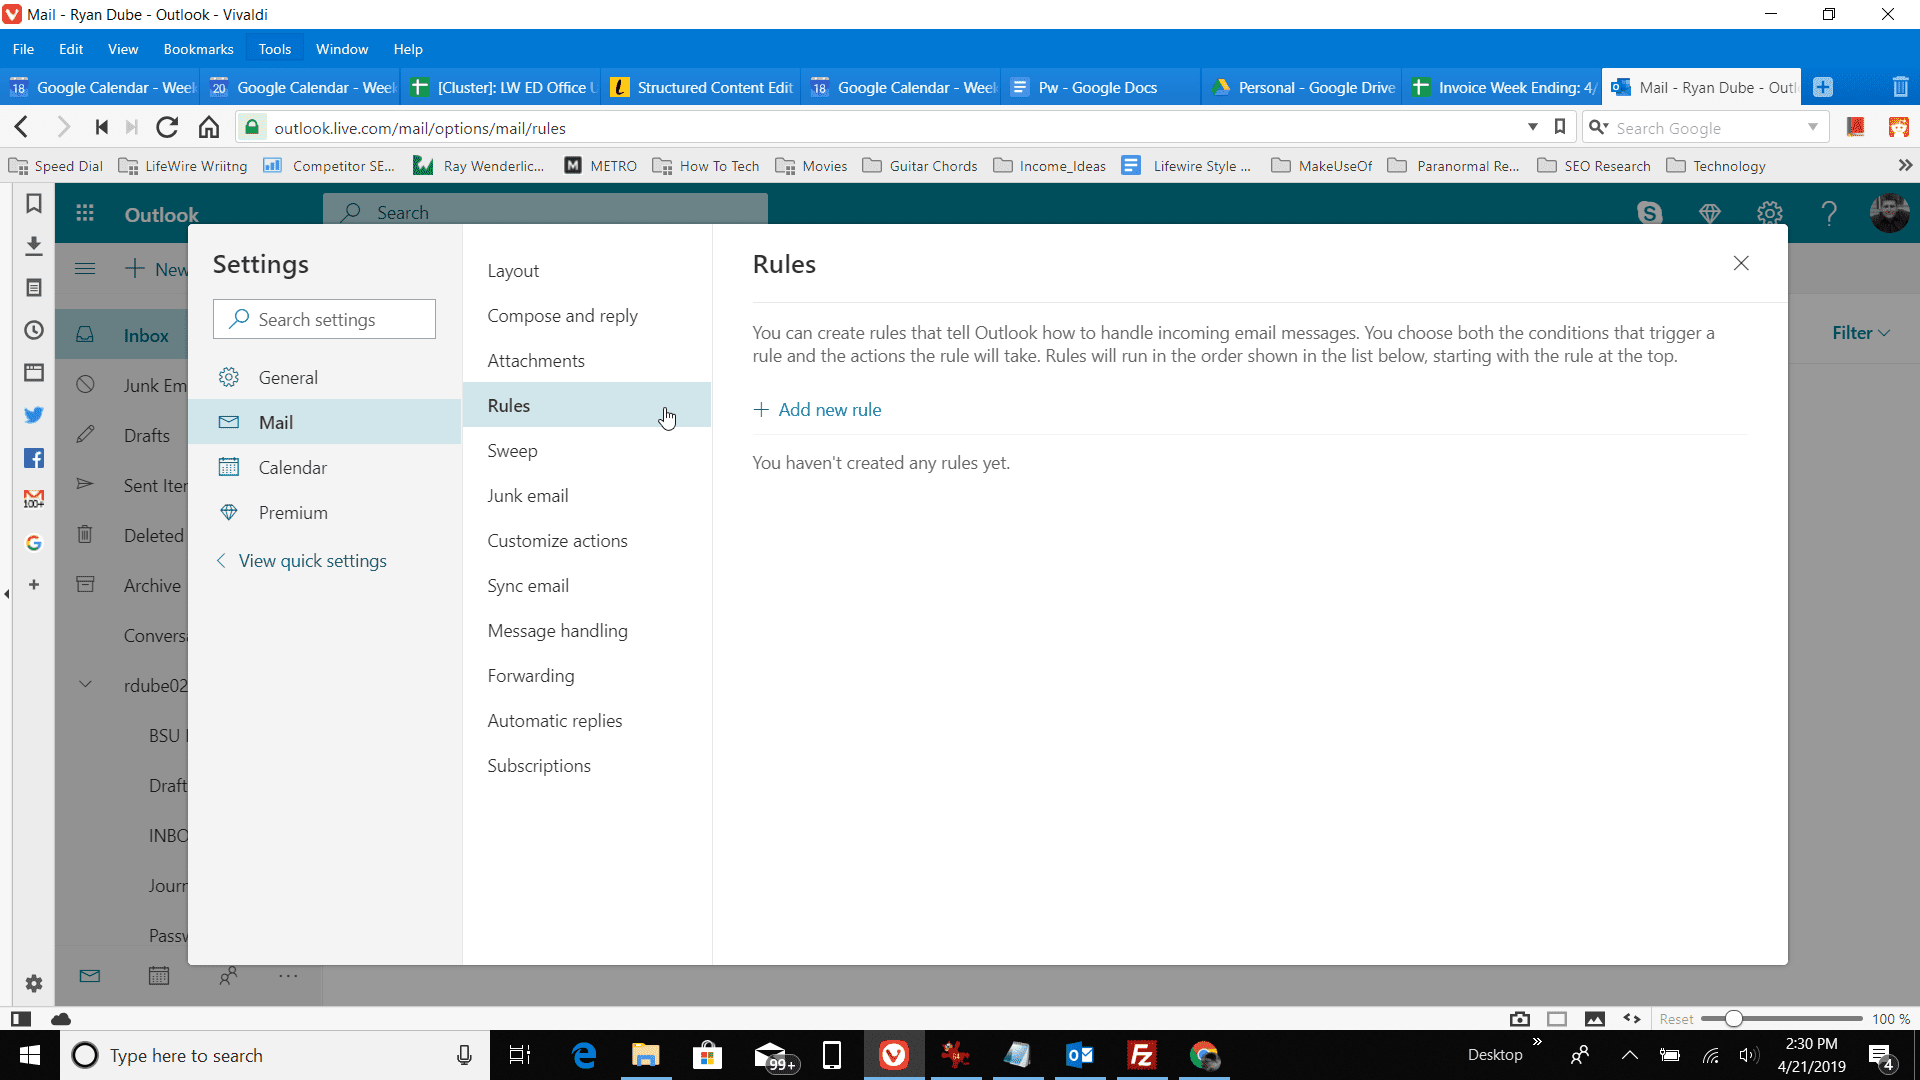 Captura de tela de adição de uma nova regra nas configurações online do Outlook